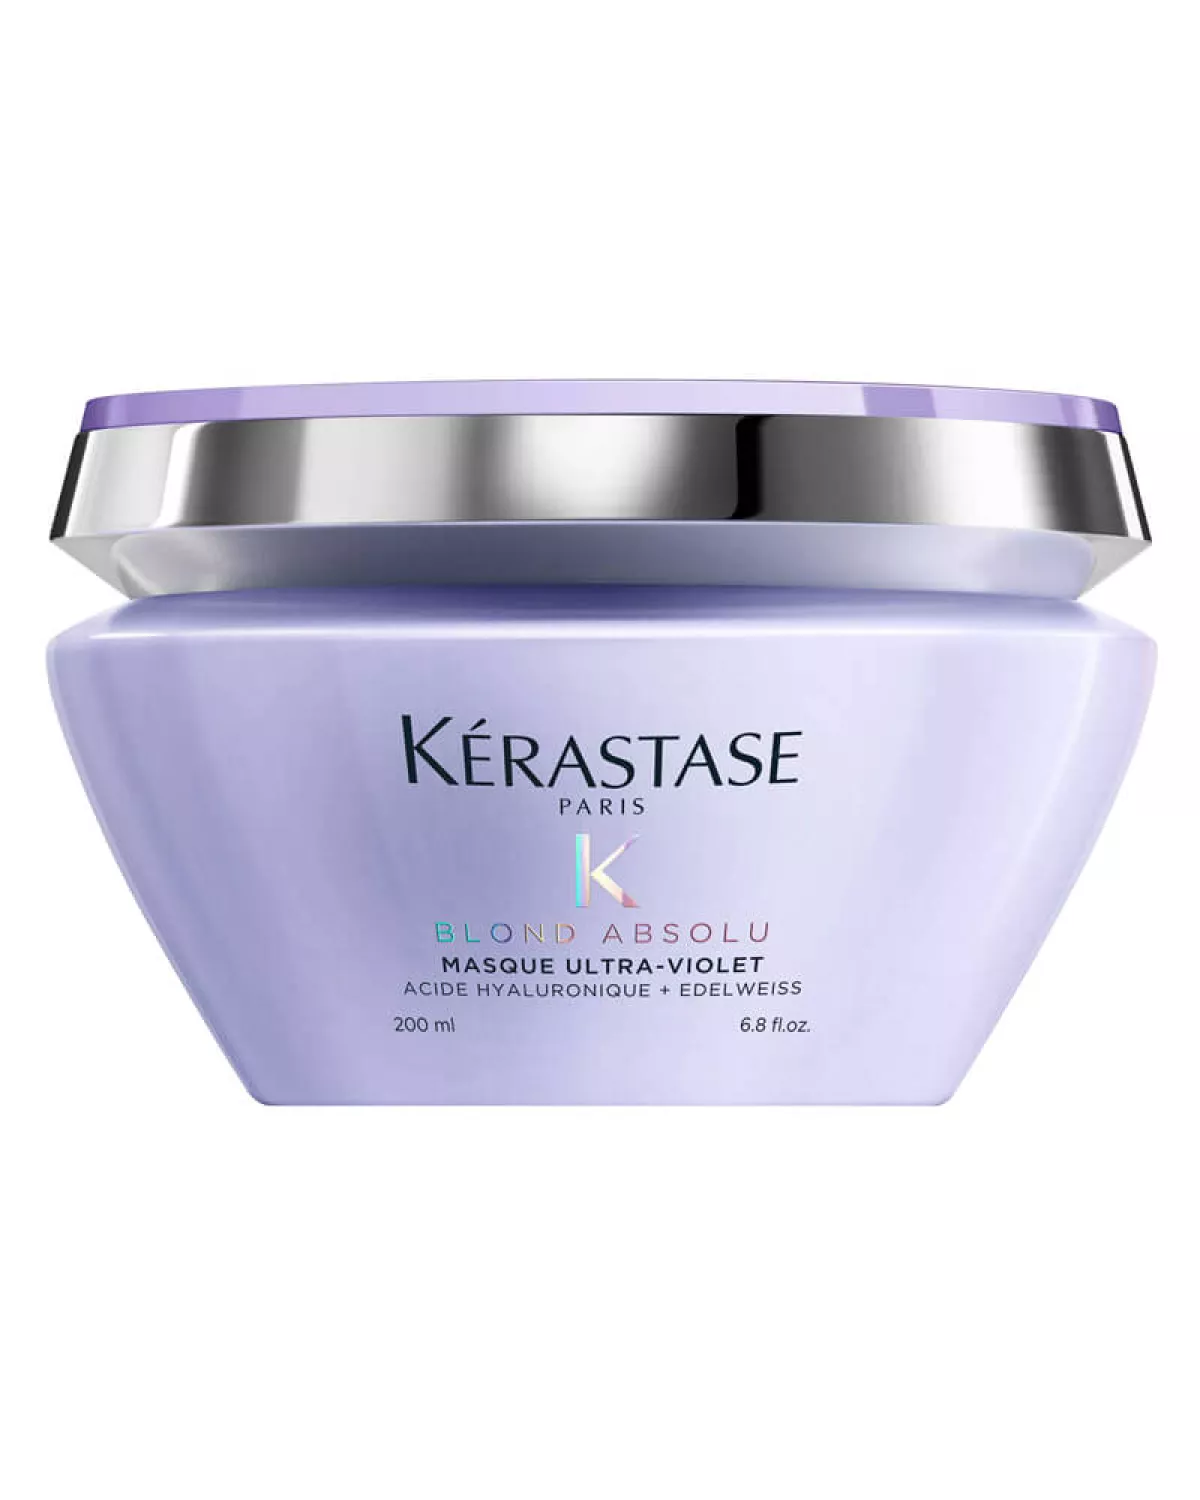 #2 - Kerastase Blond Absolu Masque Ultra Violet Hair Mask 200 ml